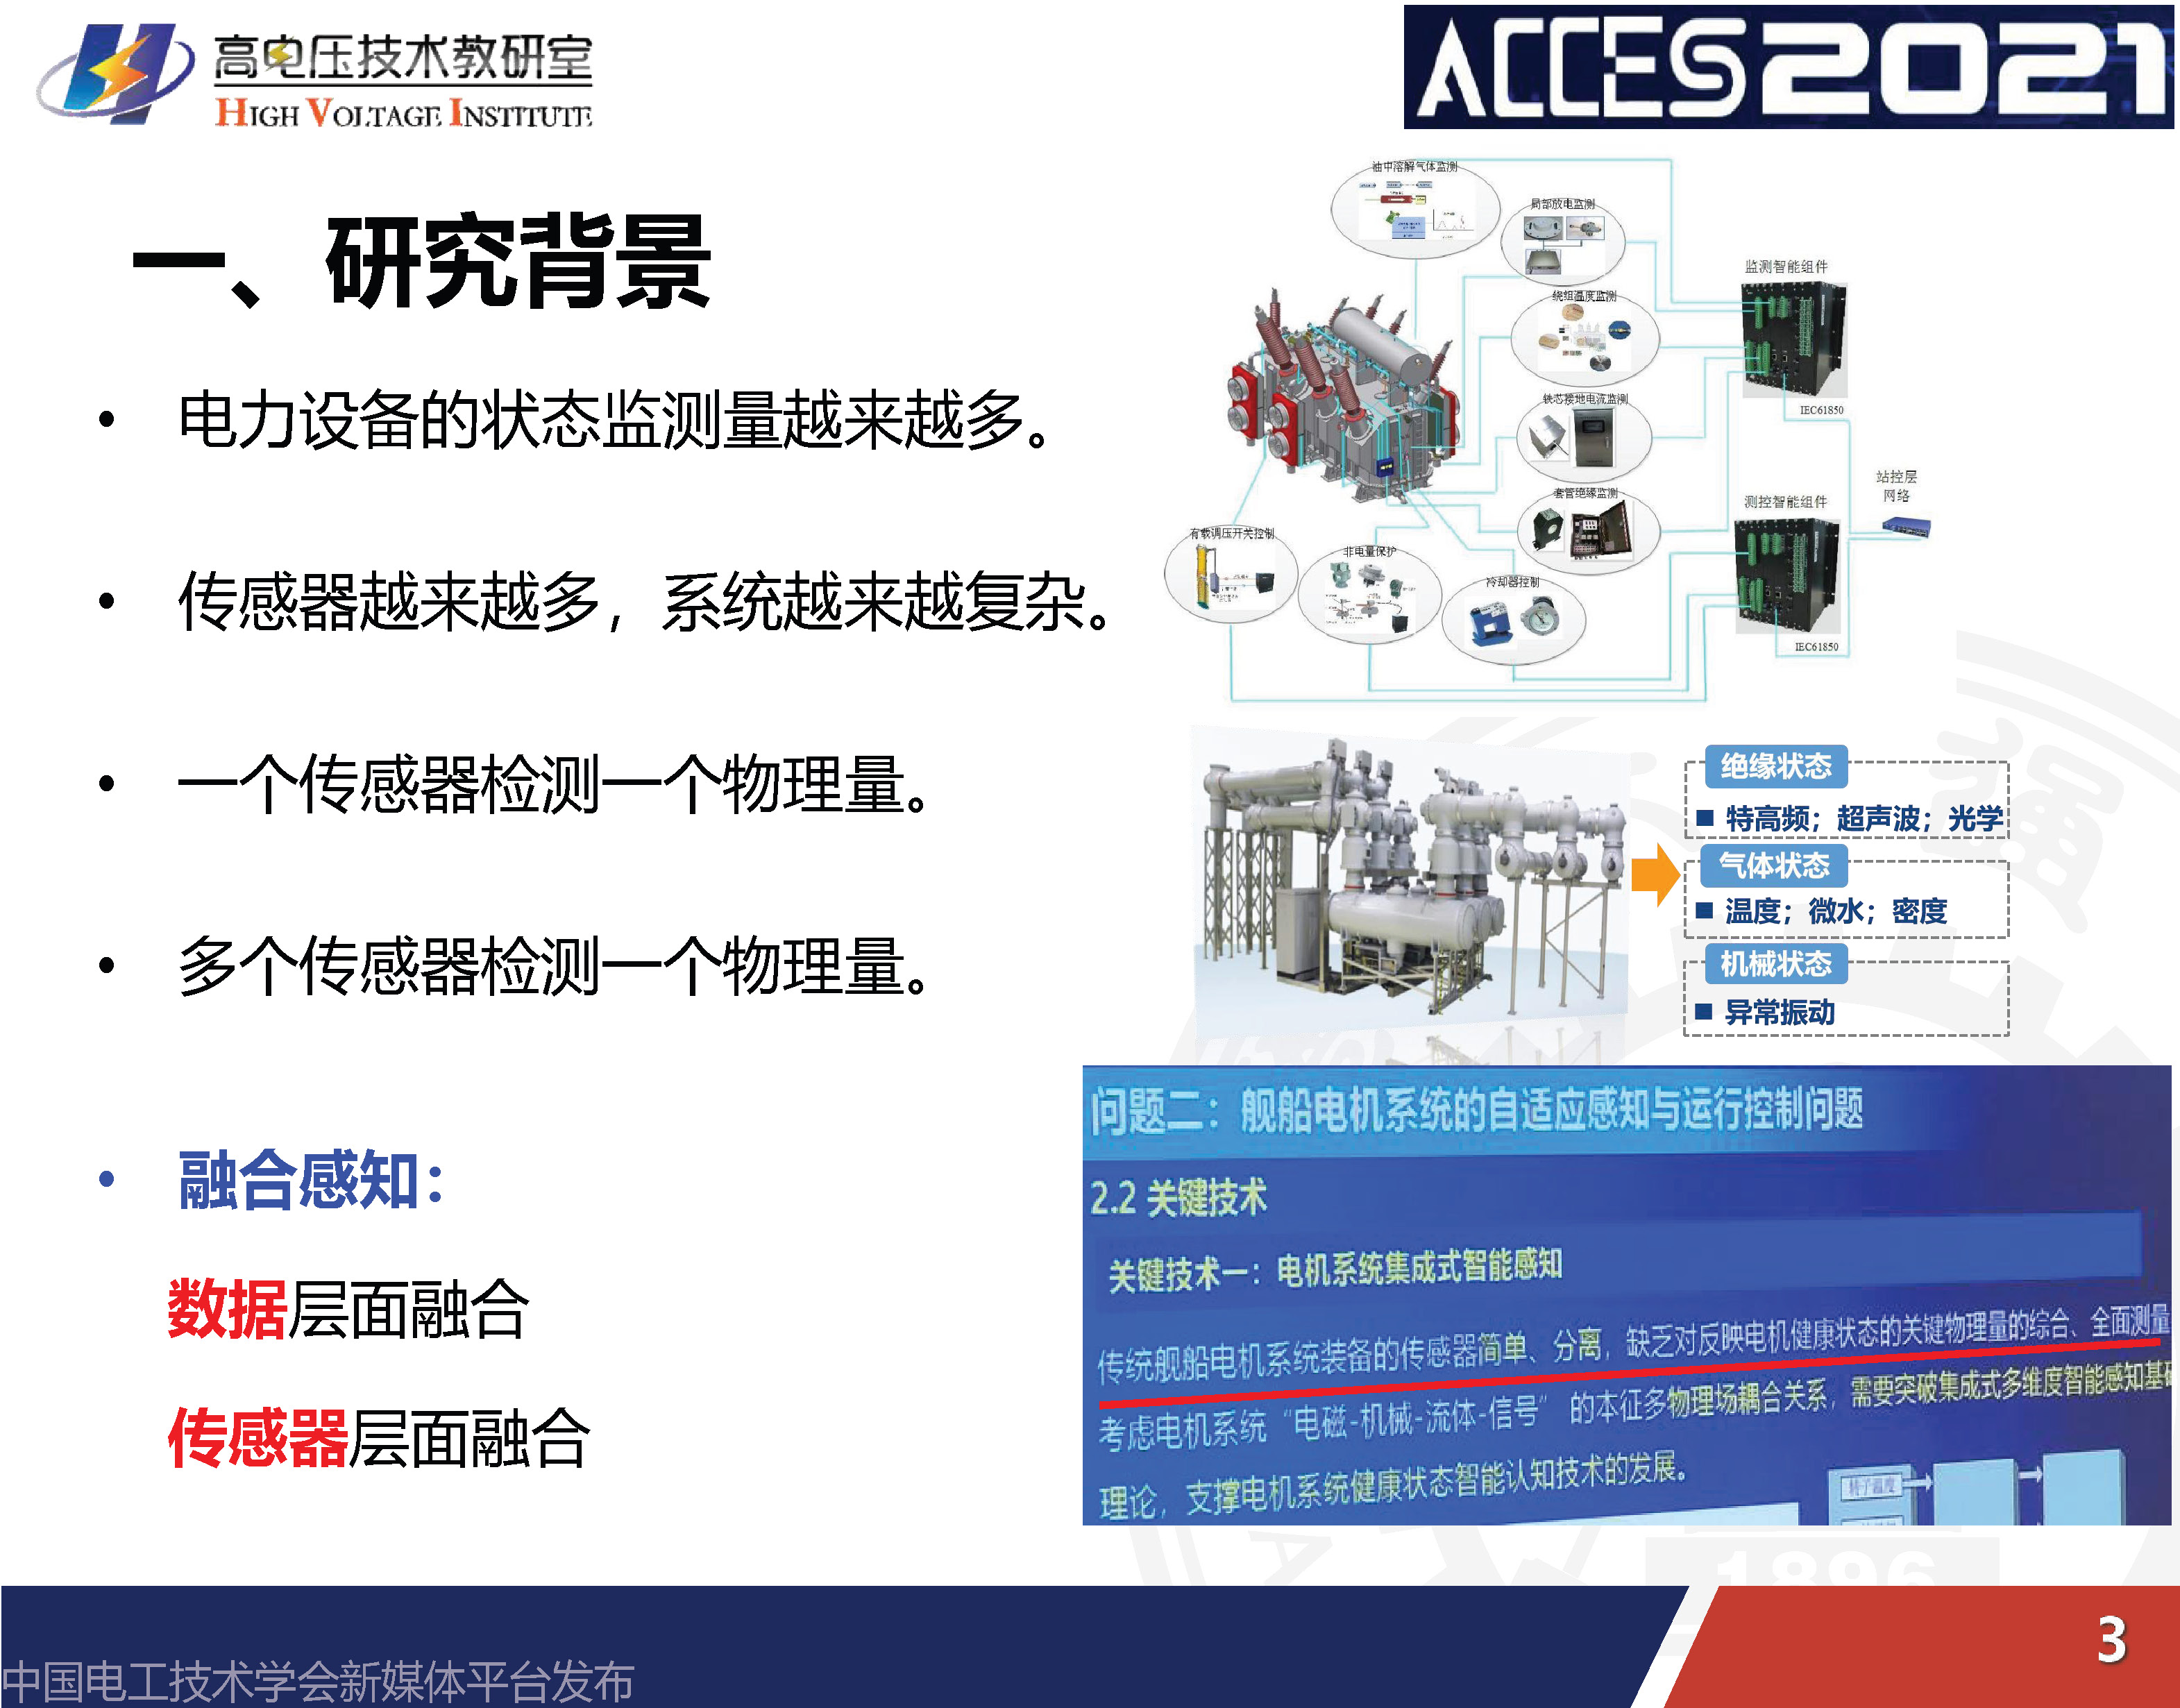 西安交通大学李军浩教授：电网关键设备状态的融合感知技术